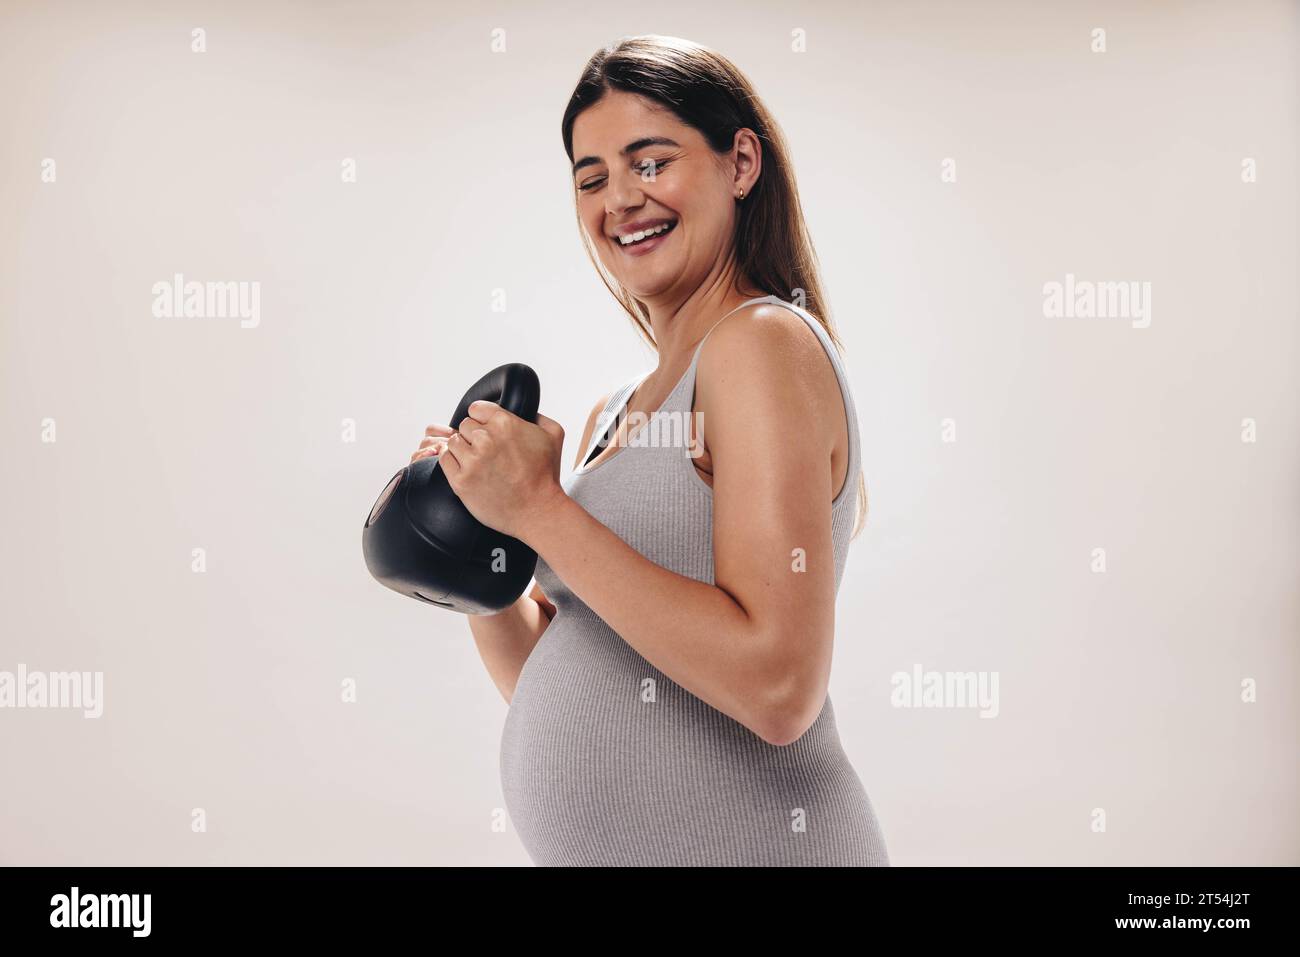 Schwangere Frau im dritten Trimenon hebt eine Kettlebell in einem gut ausgestatteten Fitnessstudio. Sie legt Wert auf ihr Wohlbefinden und nähert sich der Mutterschaft Stockfoto